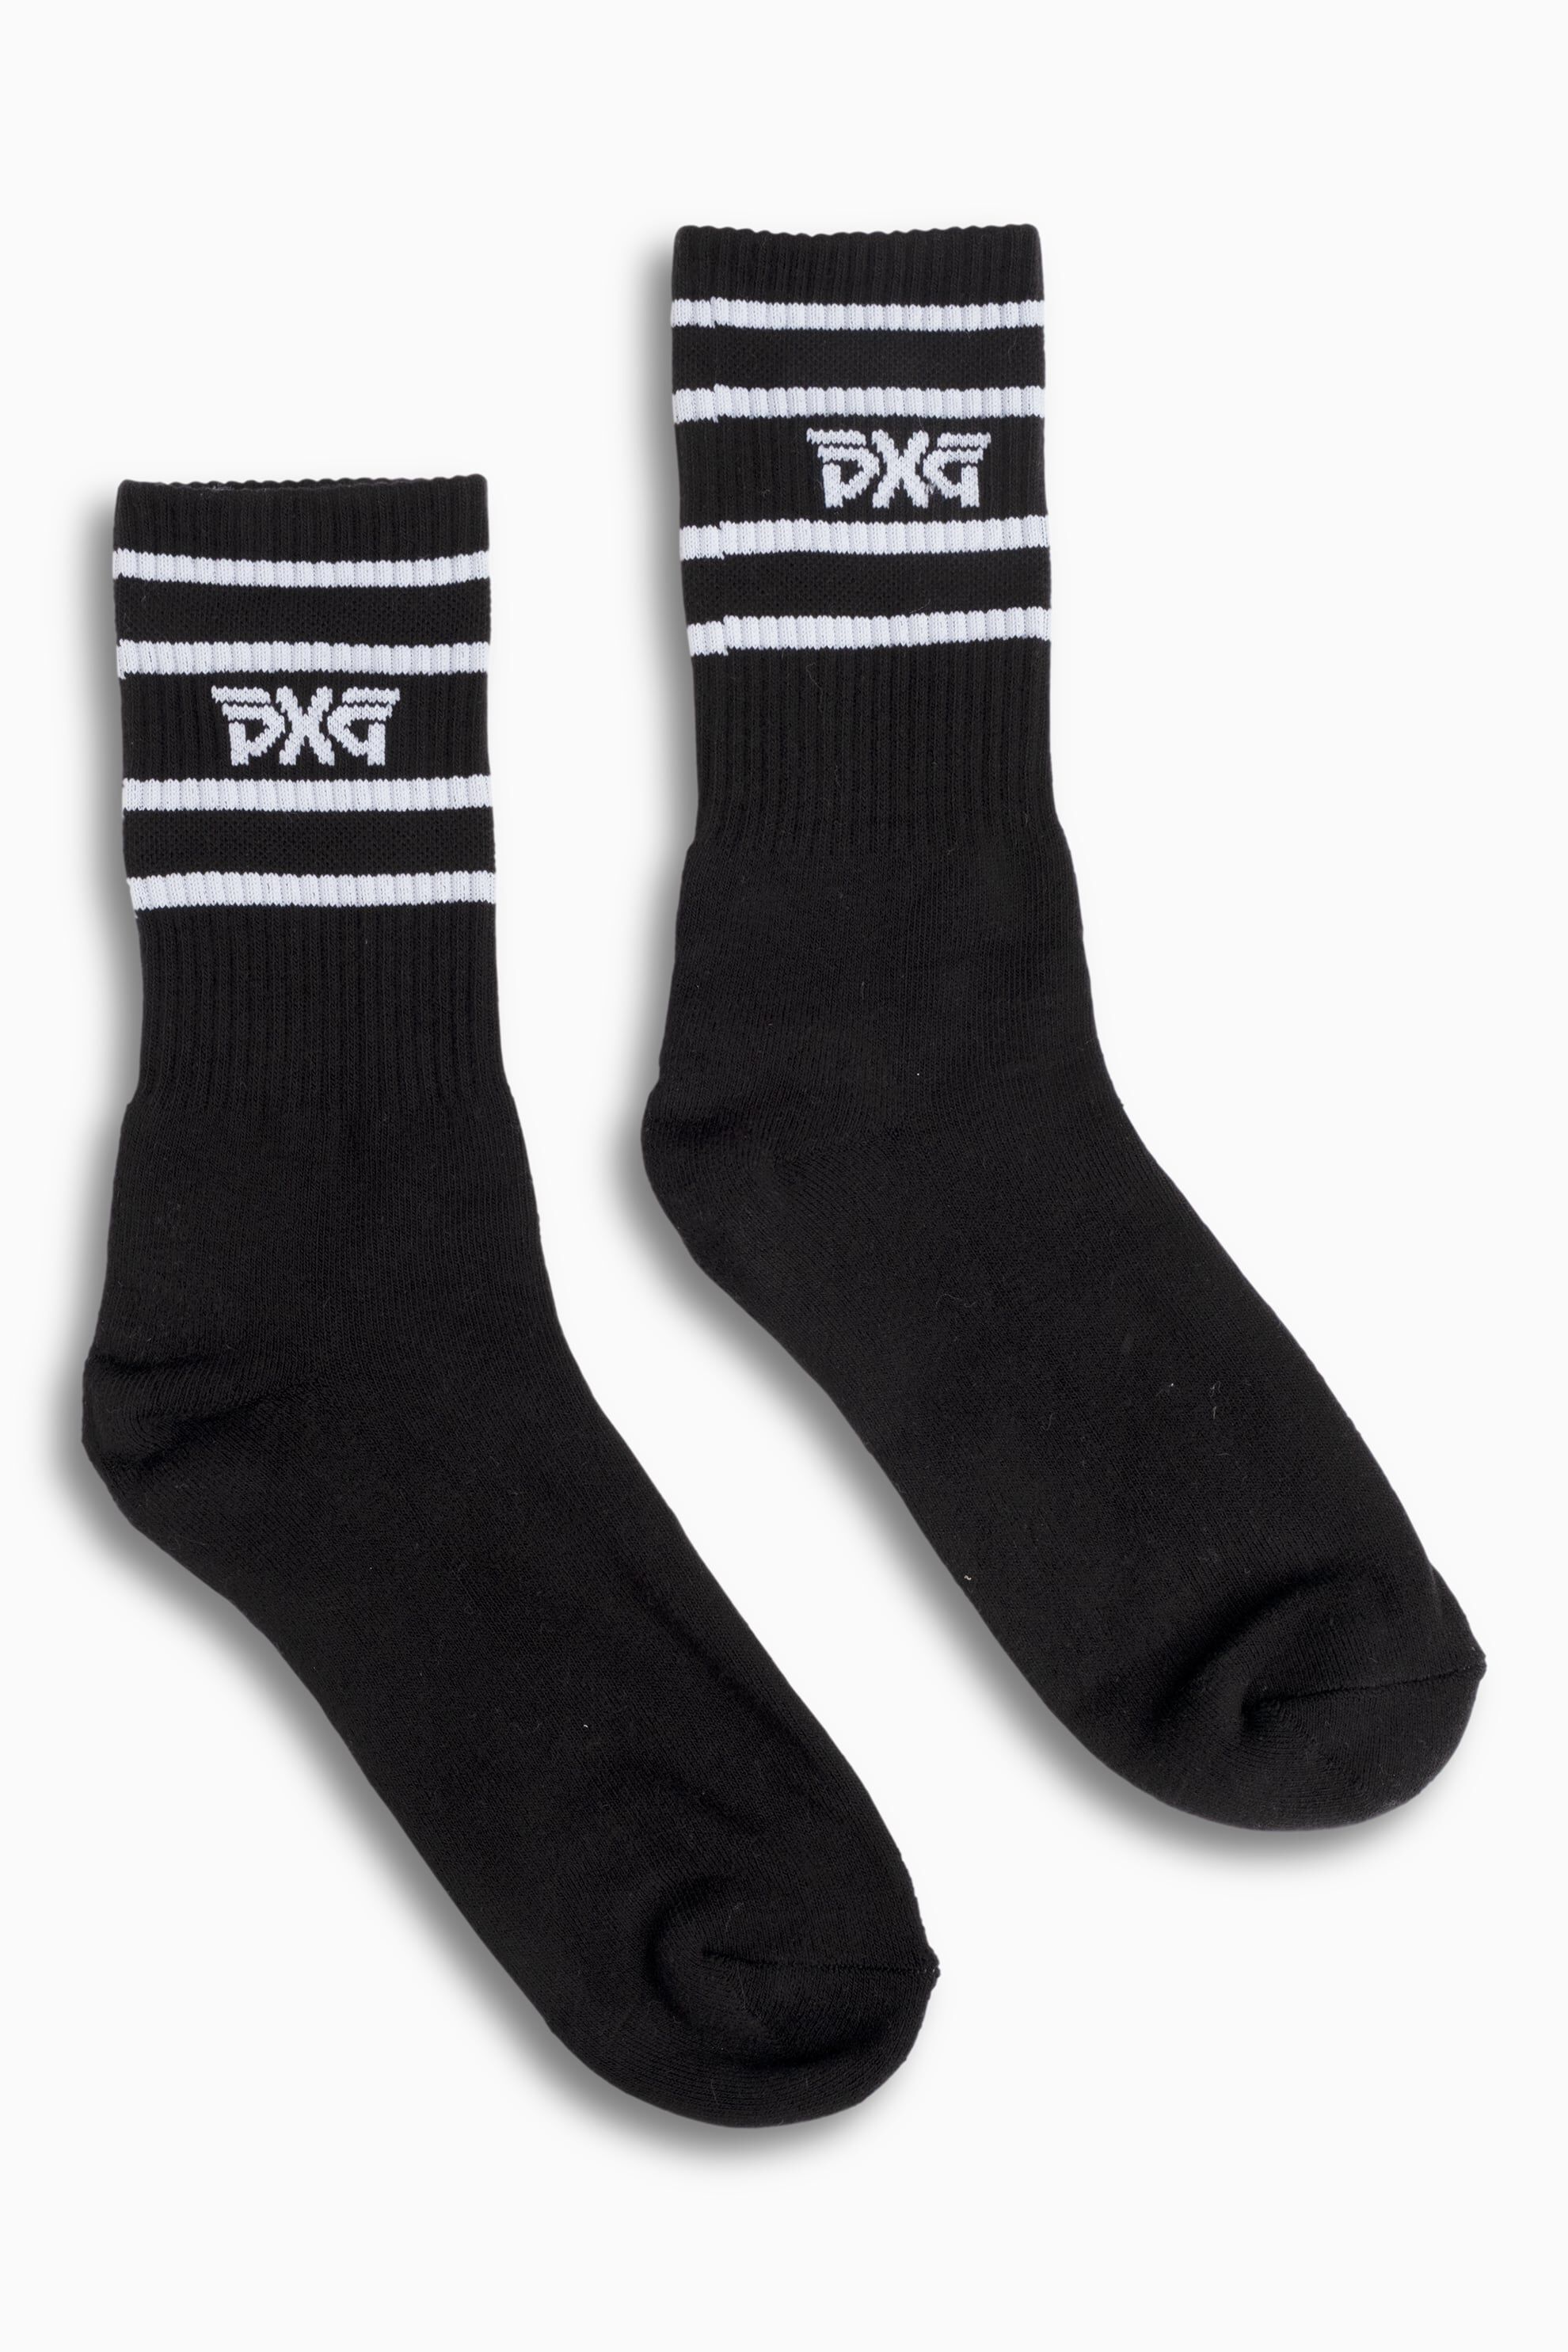 Socks GCDS Men color Black